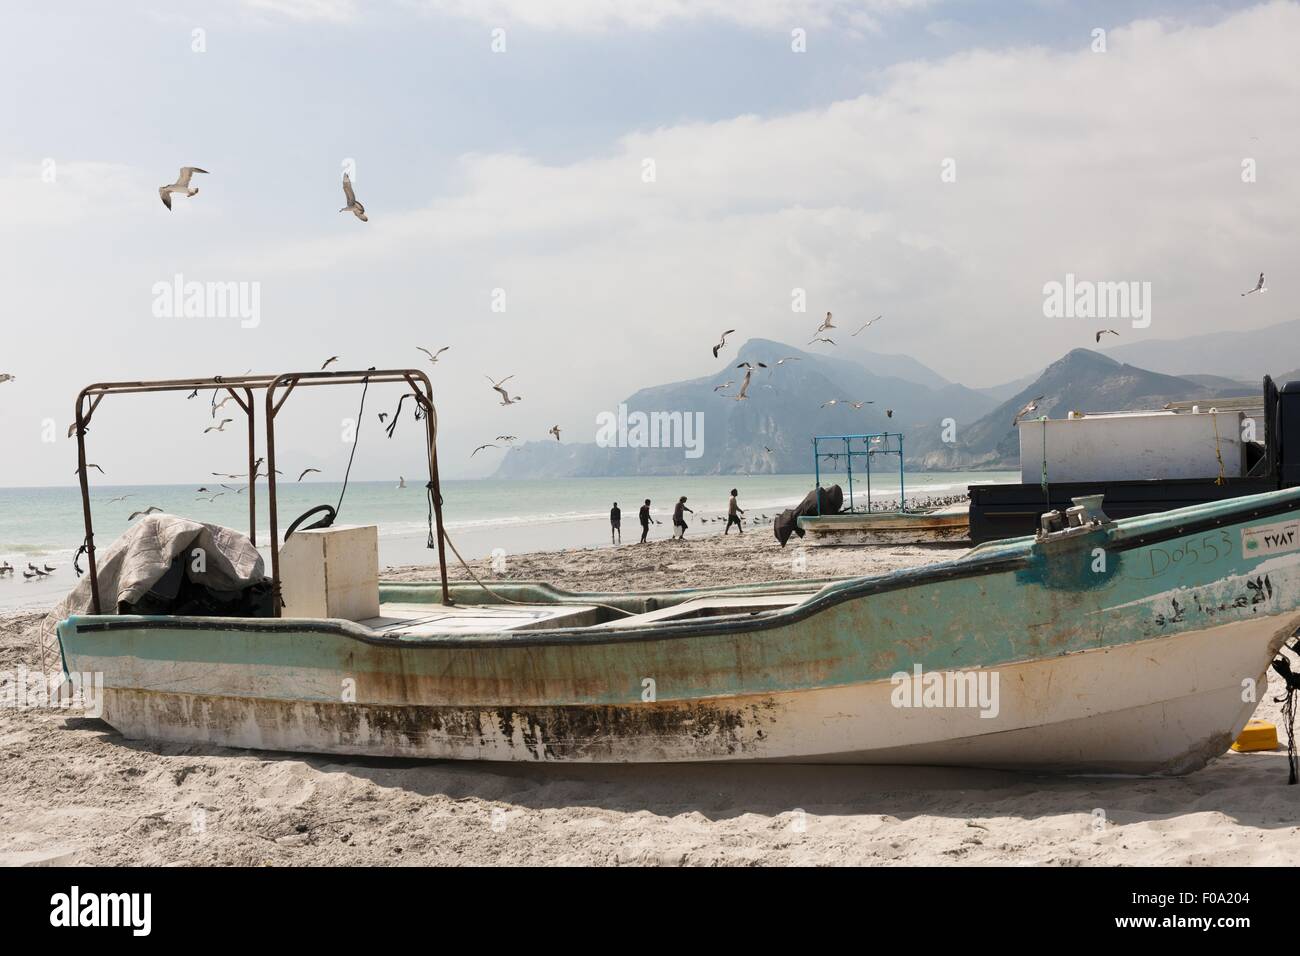 Fishing boat at Maghsail beach, Salalah, Oman Stock Photo